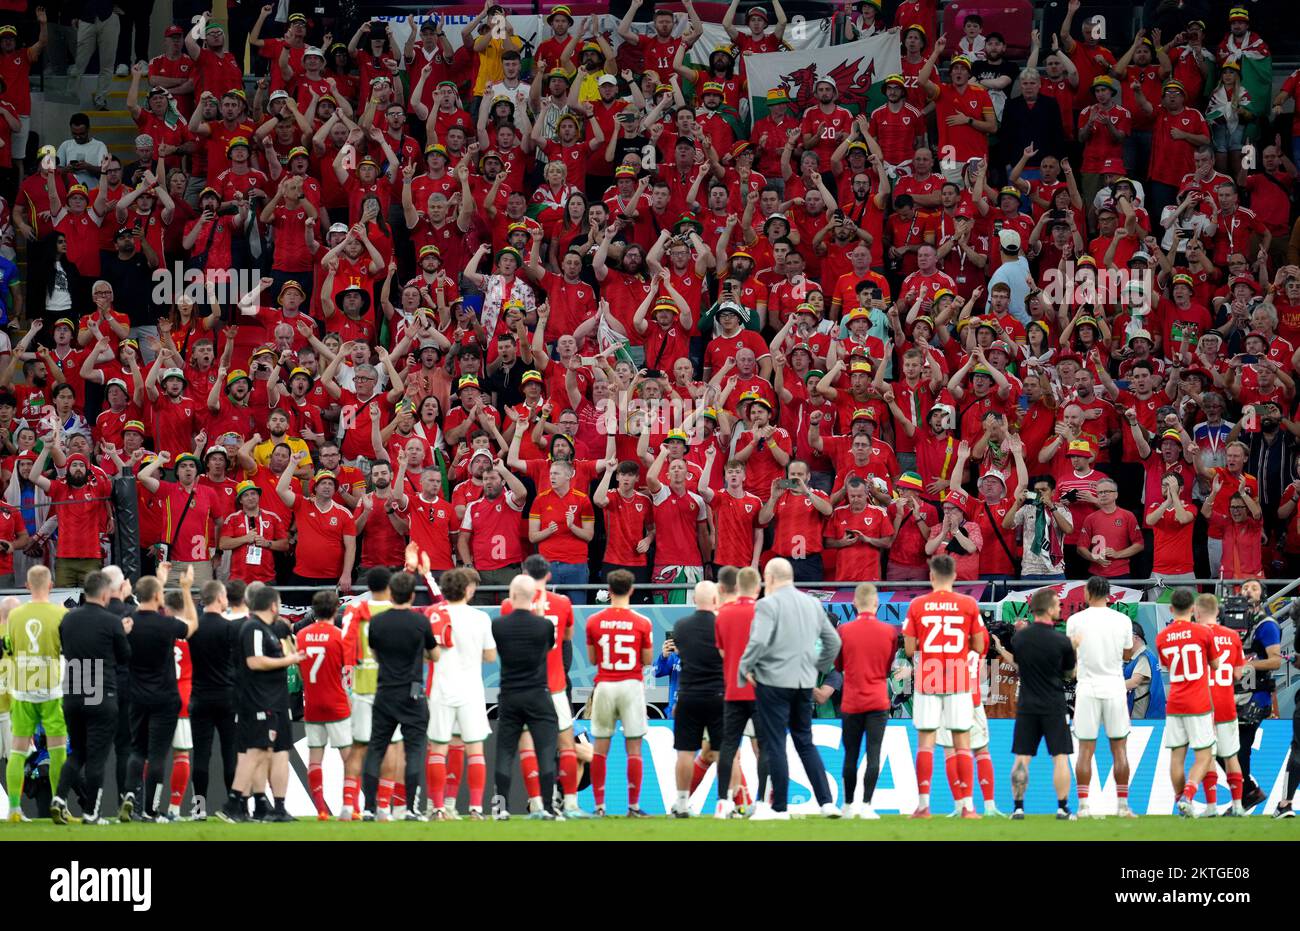 Les joueurs du pays de Galles applaudissent les supporters qui se déplacent à la suite du match de la coupe du monde de la FIFA, groupe B, au stade Ahmad Bin Ali, à Al Rayyan, au Qatar. Date de la photo: Mardi 29 novembre 2022. Banque D'Images